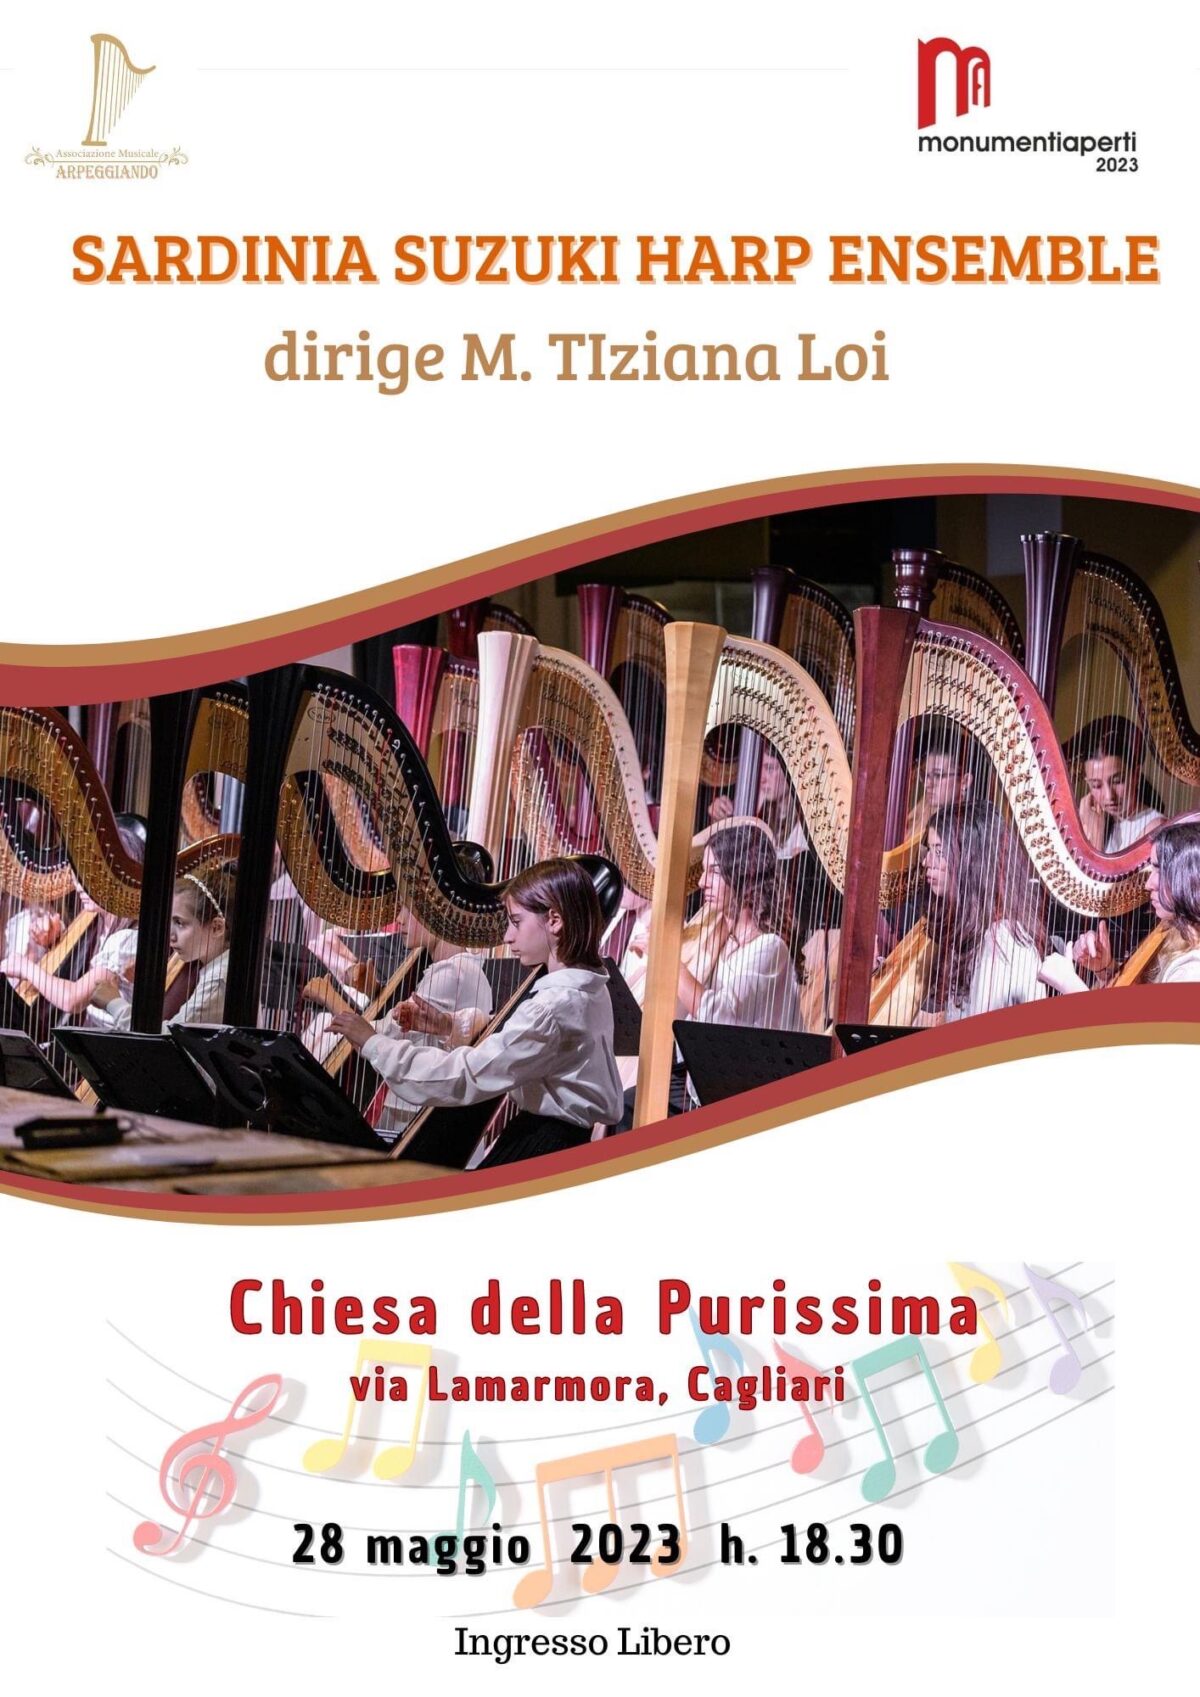 Locandina di Sardinia Suzuki Harp Ensemble a Arpeggiando Monumenti aperti 2023 nella chiesa della Purissima